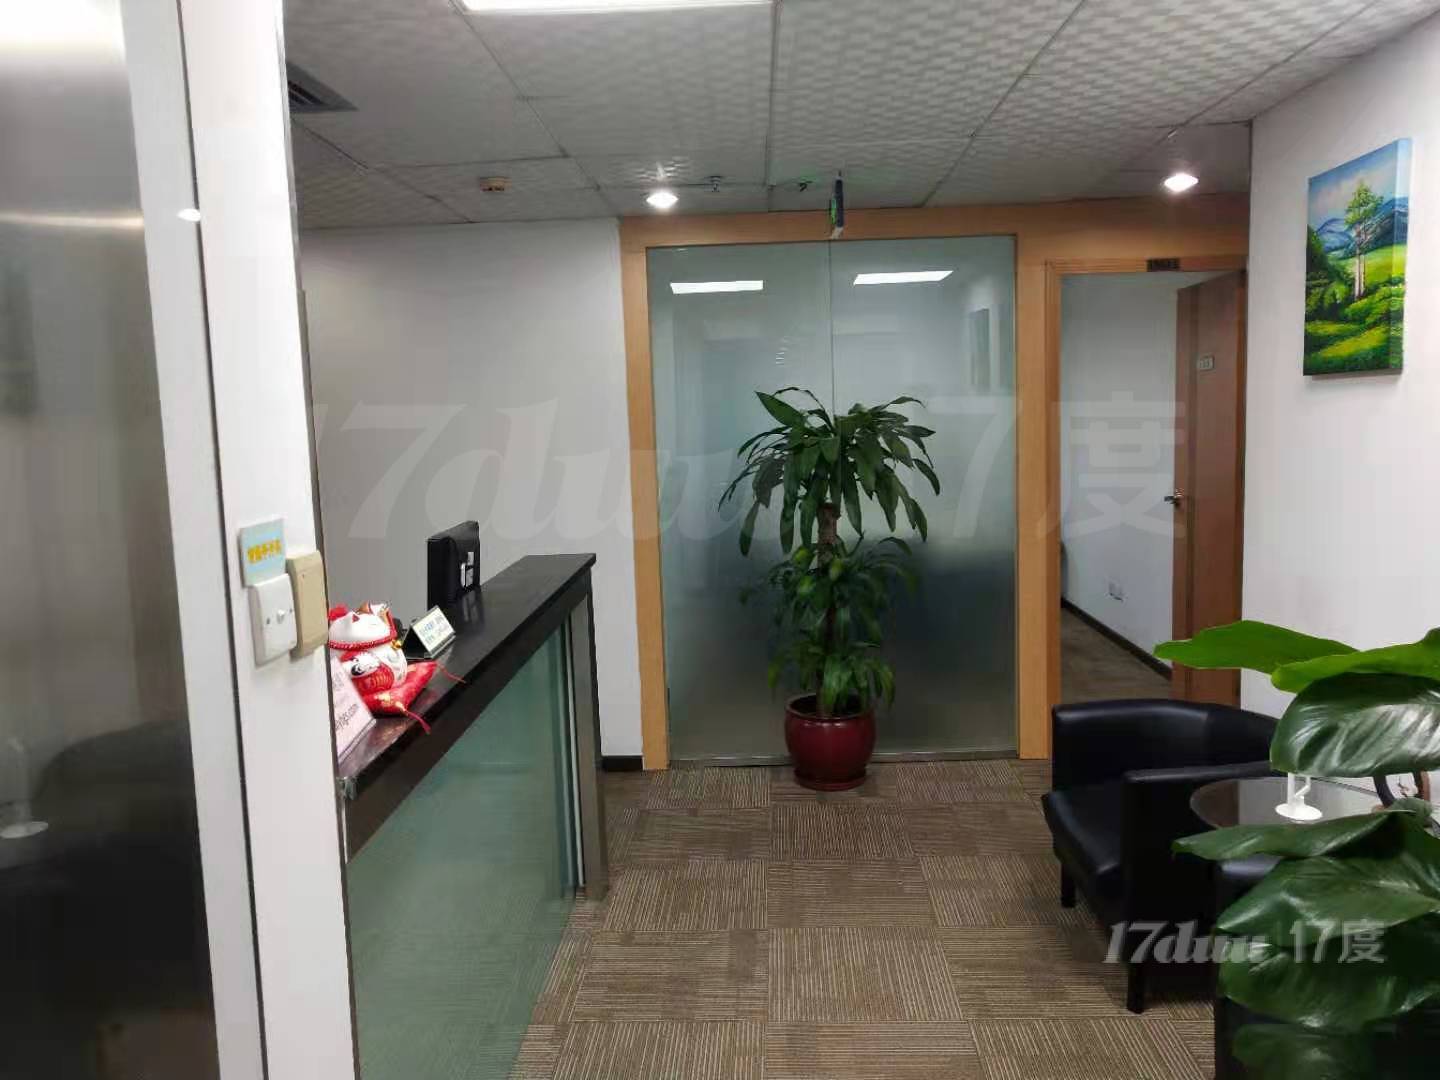 天河珠江新城 注册解锁办证创业专用小办公室 